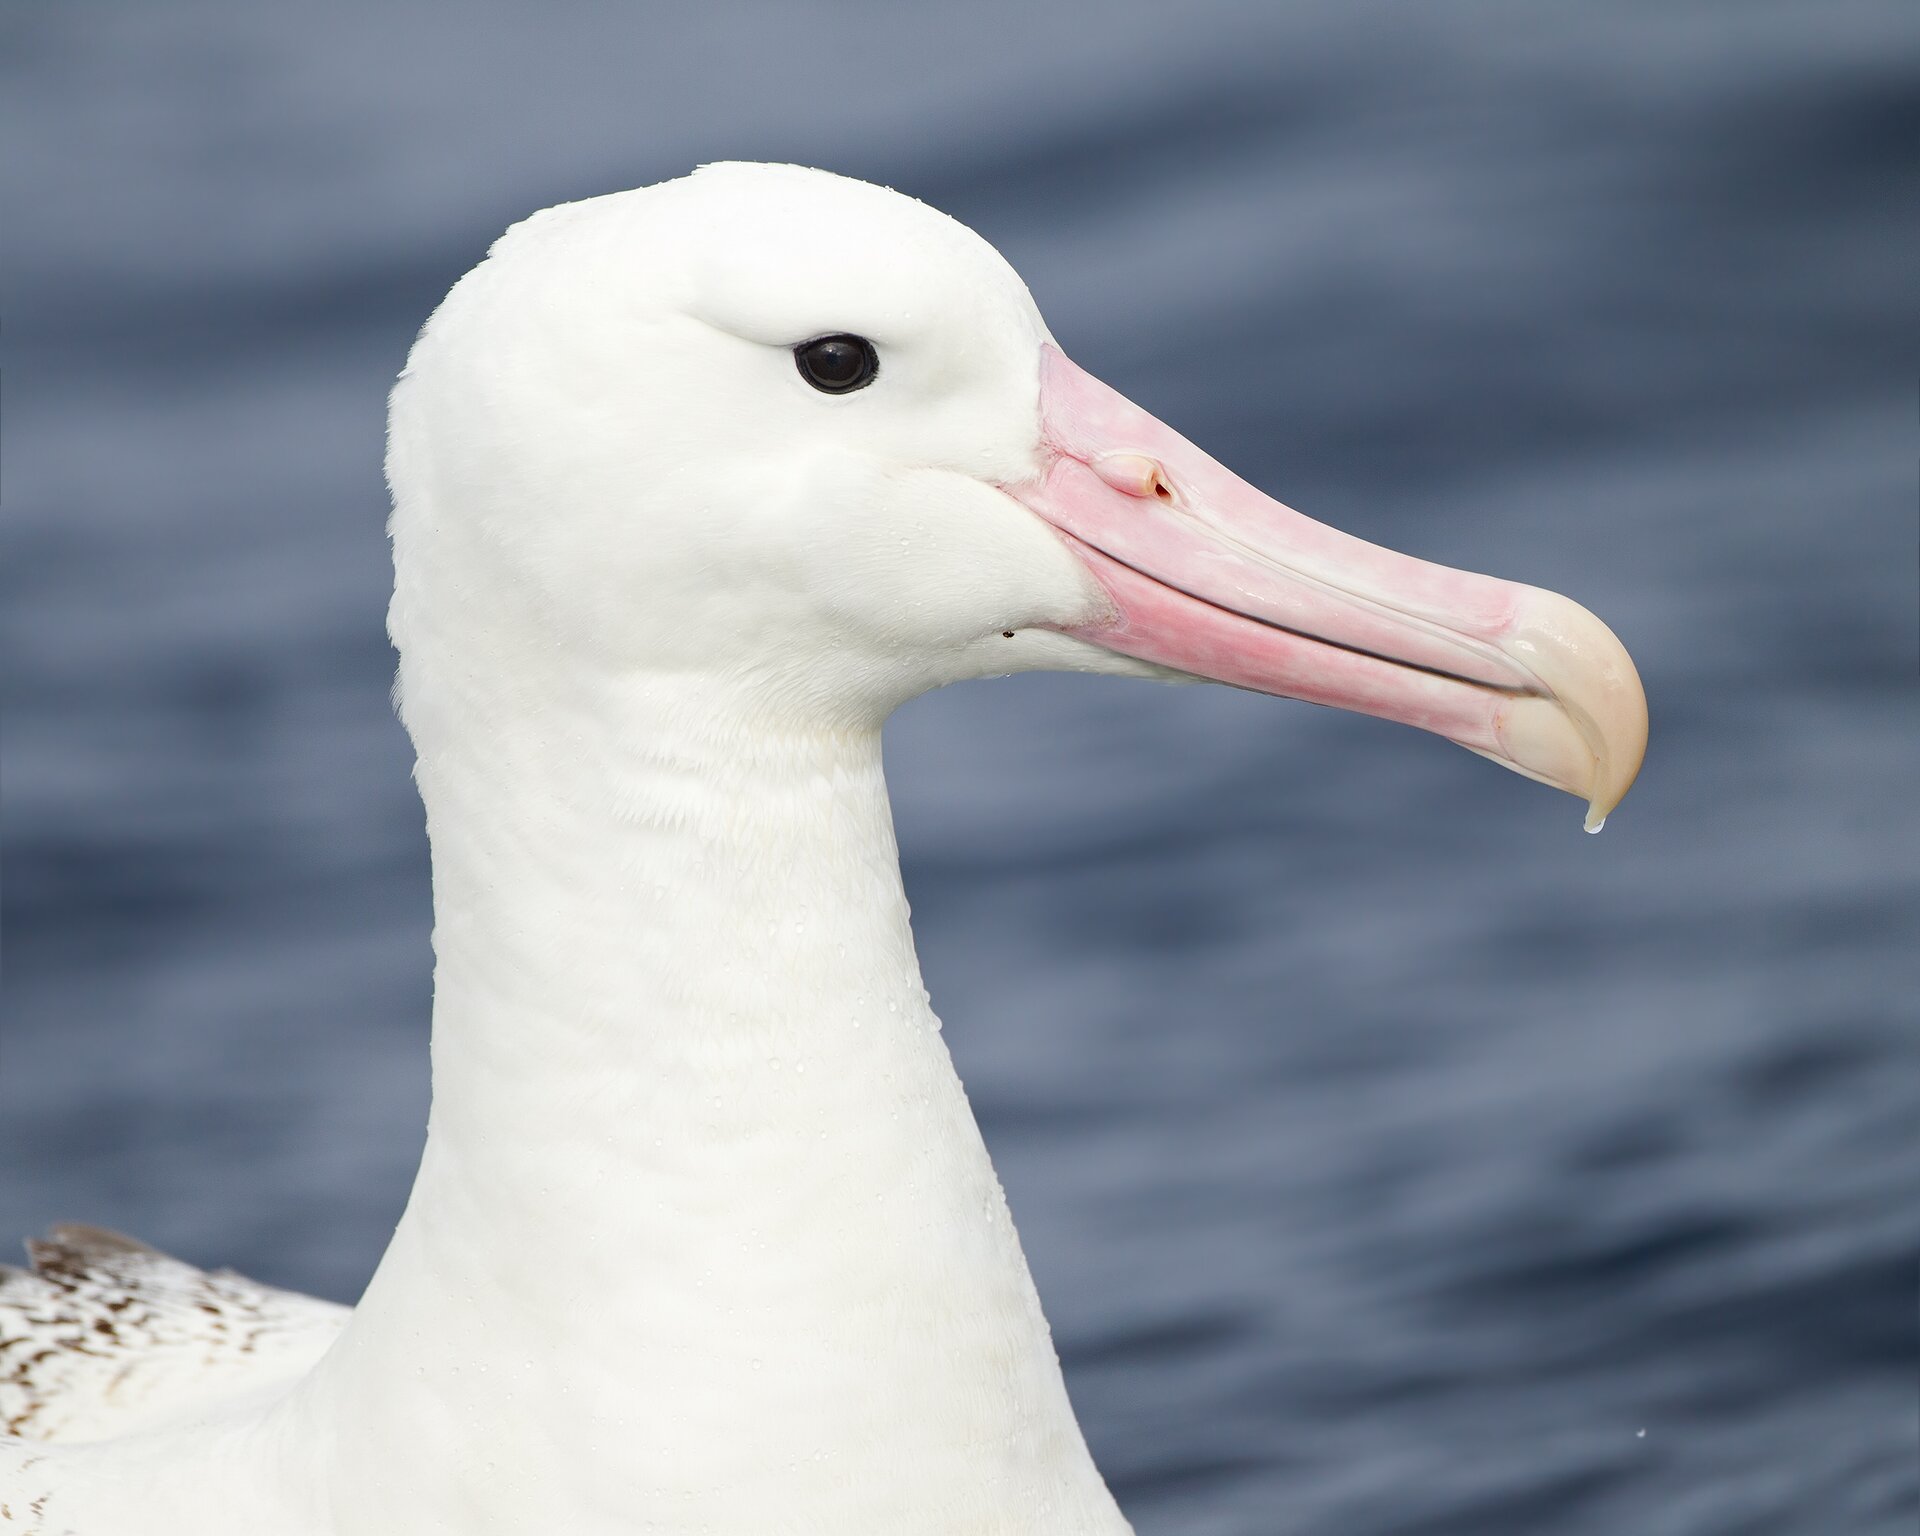 Na ilustracji znajduje się albatros królewski zwrócony bokiem. Ma białe upierzenie, dość krótką, masywną szyję, czarne oko i dość długi i szeroki, jasnoróżowy dziób skierowany na samym końcu ku dołowi. W tle widoczna jest tafla wody.